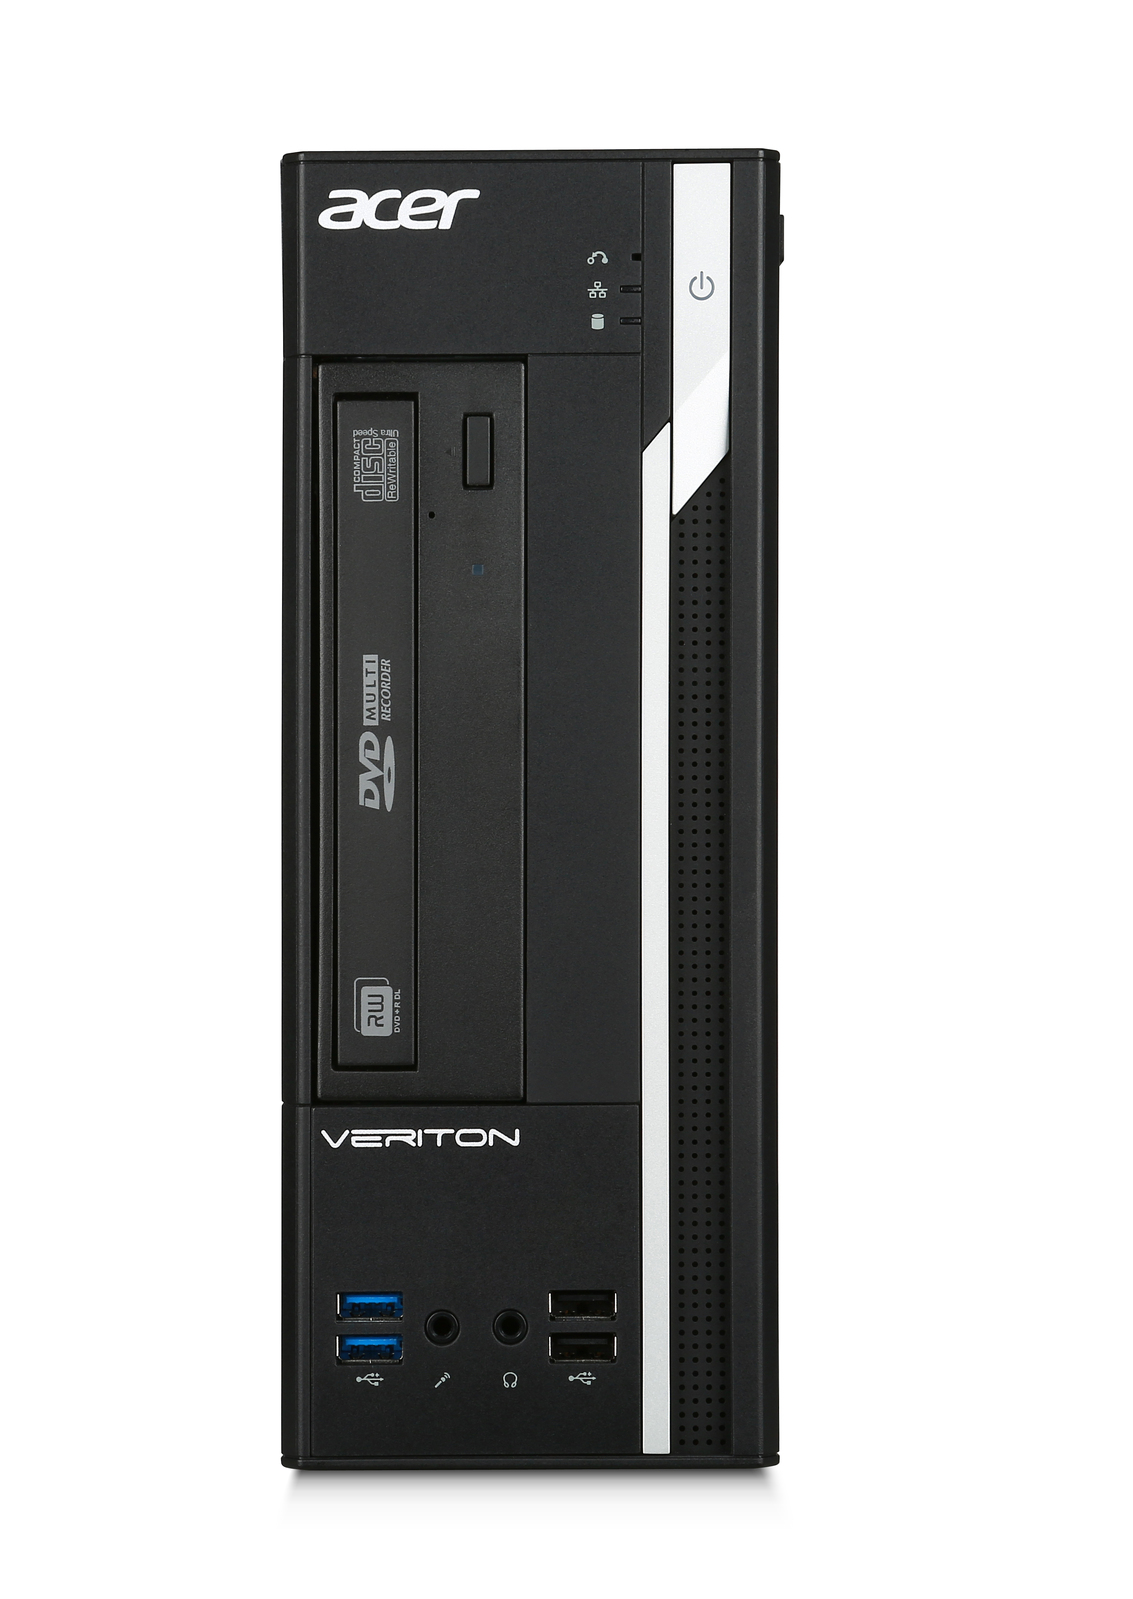 Acer Veriton X2640G SFF Intel i5 6400 2.70GHz 8GB RAM 500GB HDD Win 10